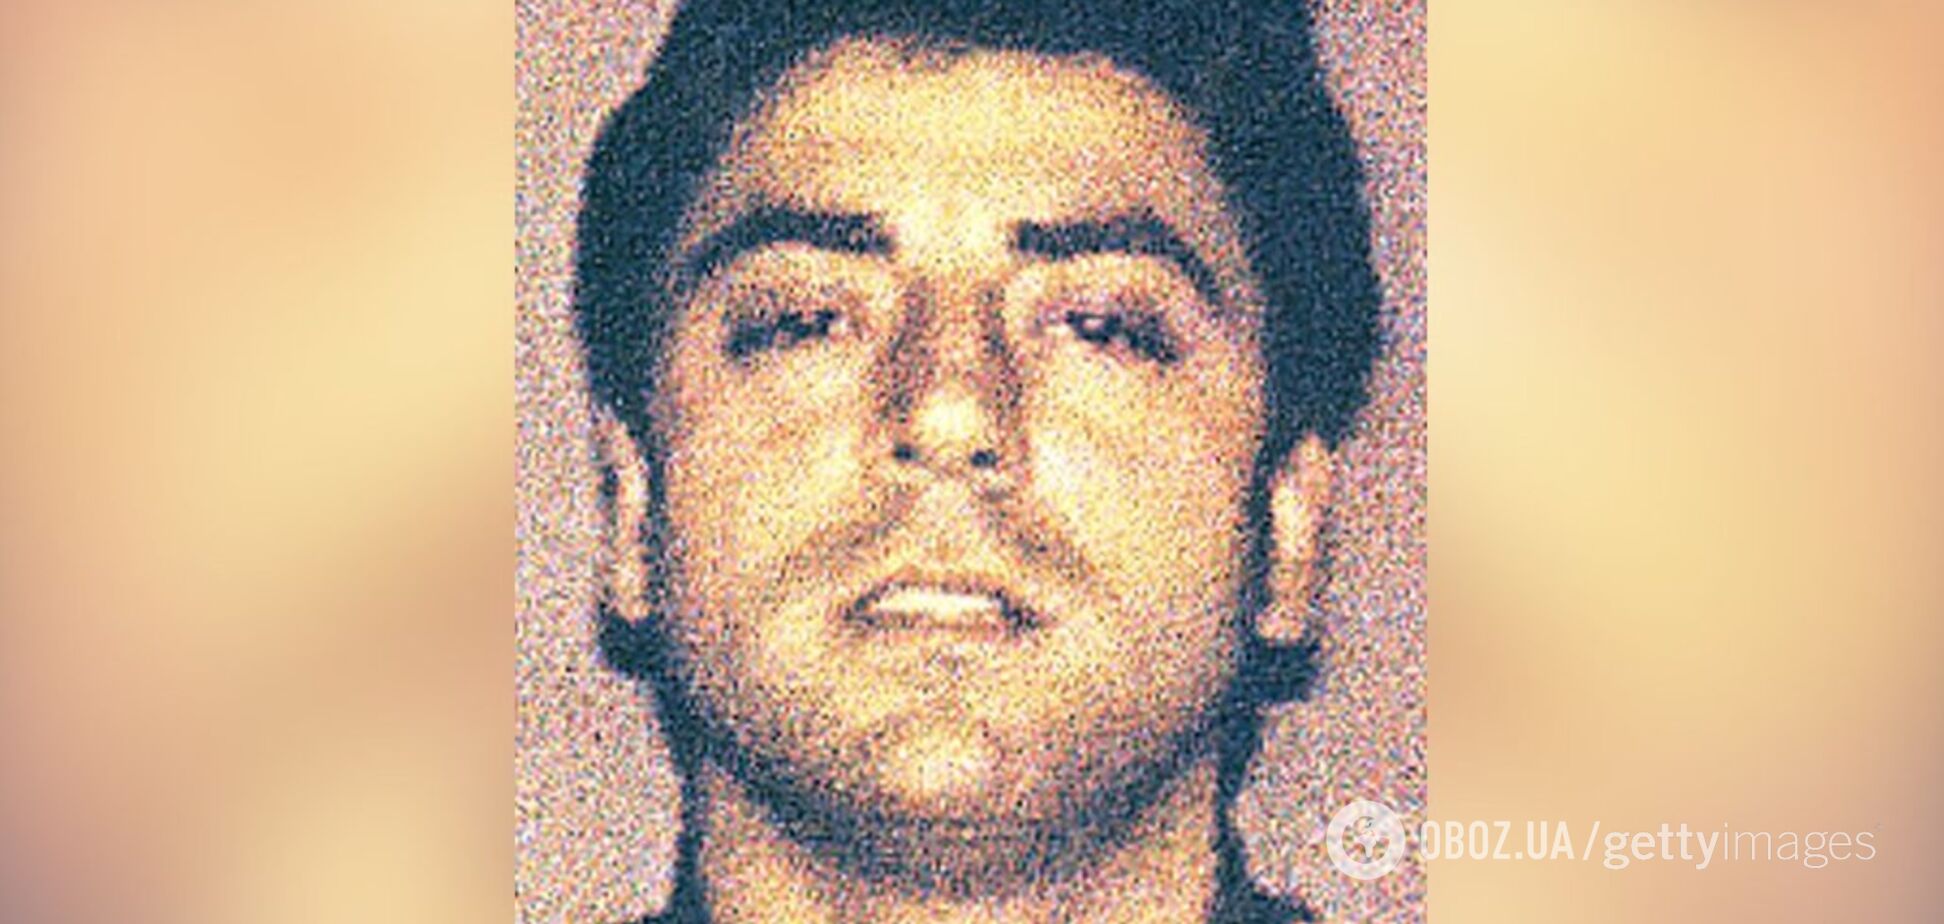  Впервые за 34 года: в США дерзко застрелили босса мафии Гамбино